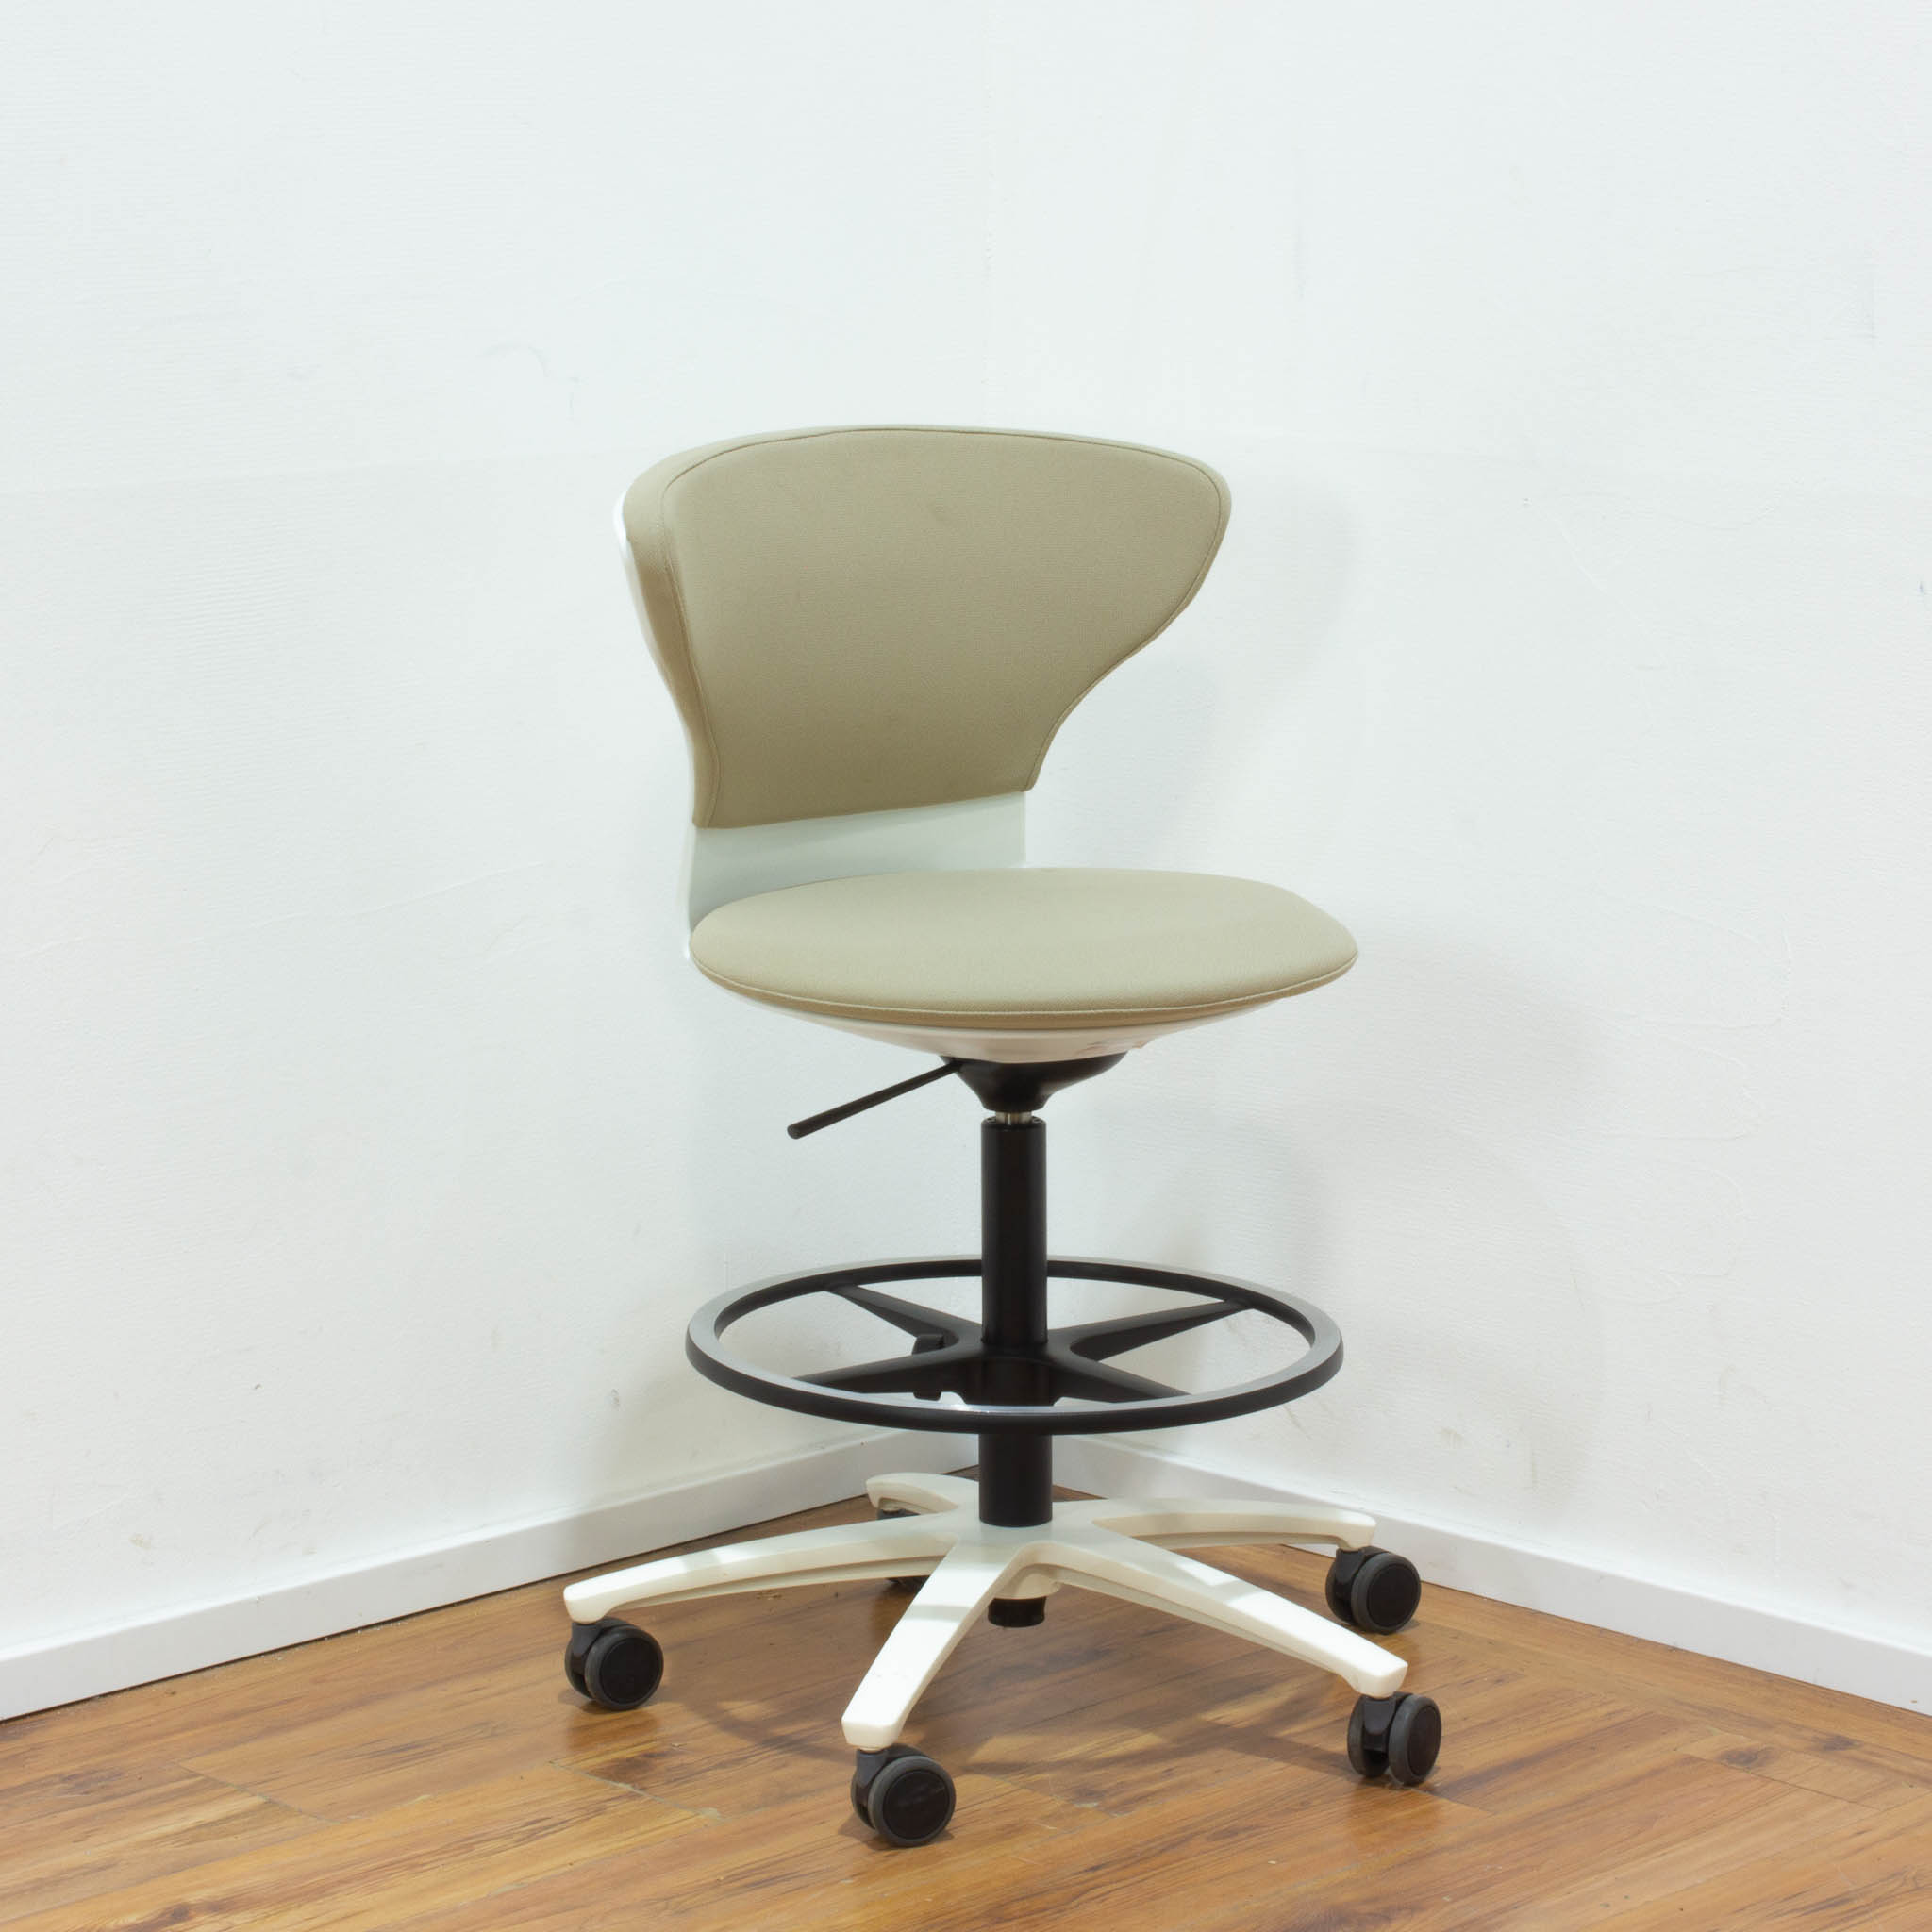 Sedus "Turn Around" High Desk Chair - beige